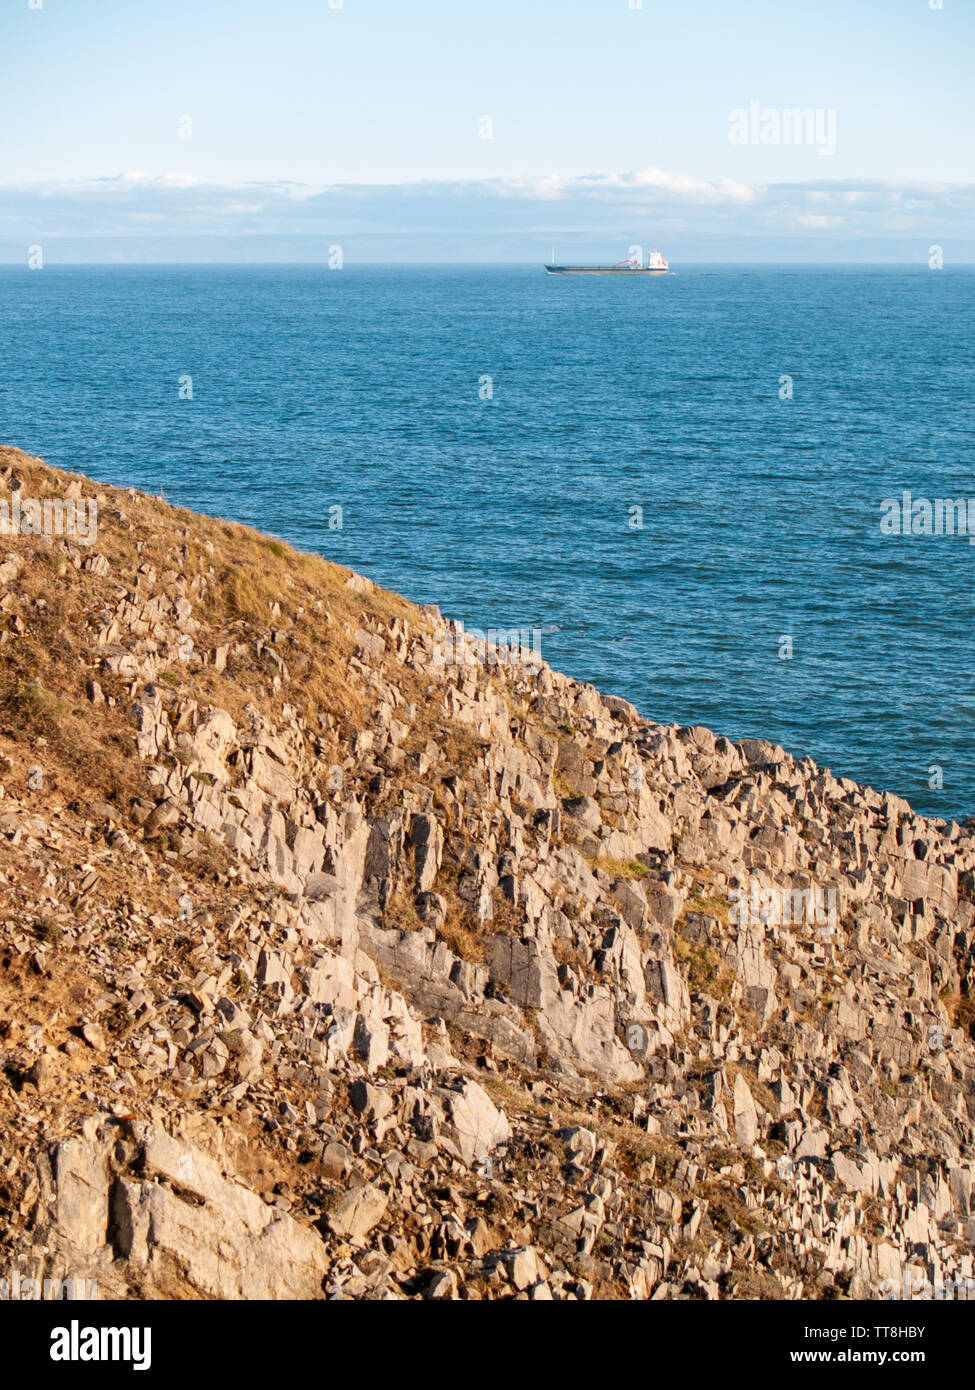 Un navire à l'horizon avec la côte nord du Devon visible derrière elle sur le sentier du littoral entre la baie de Langland et Caswell Bay sur Gower, Pays de Galles, Royaume-Uni Banque D'Images